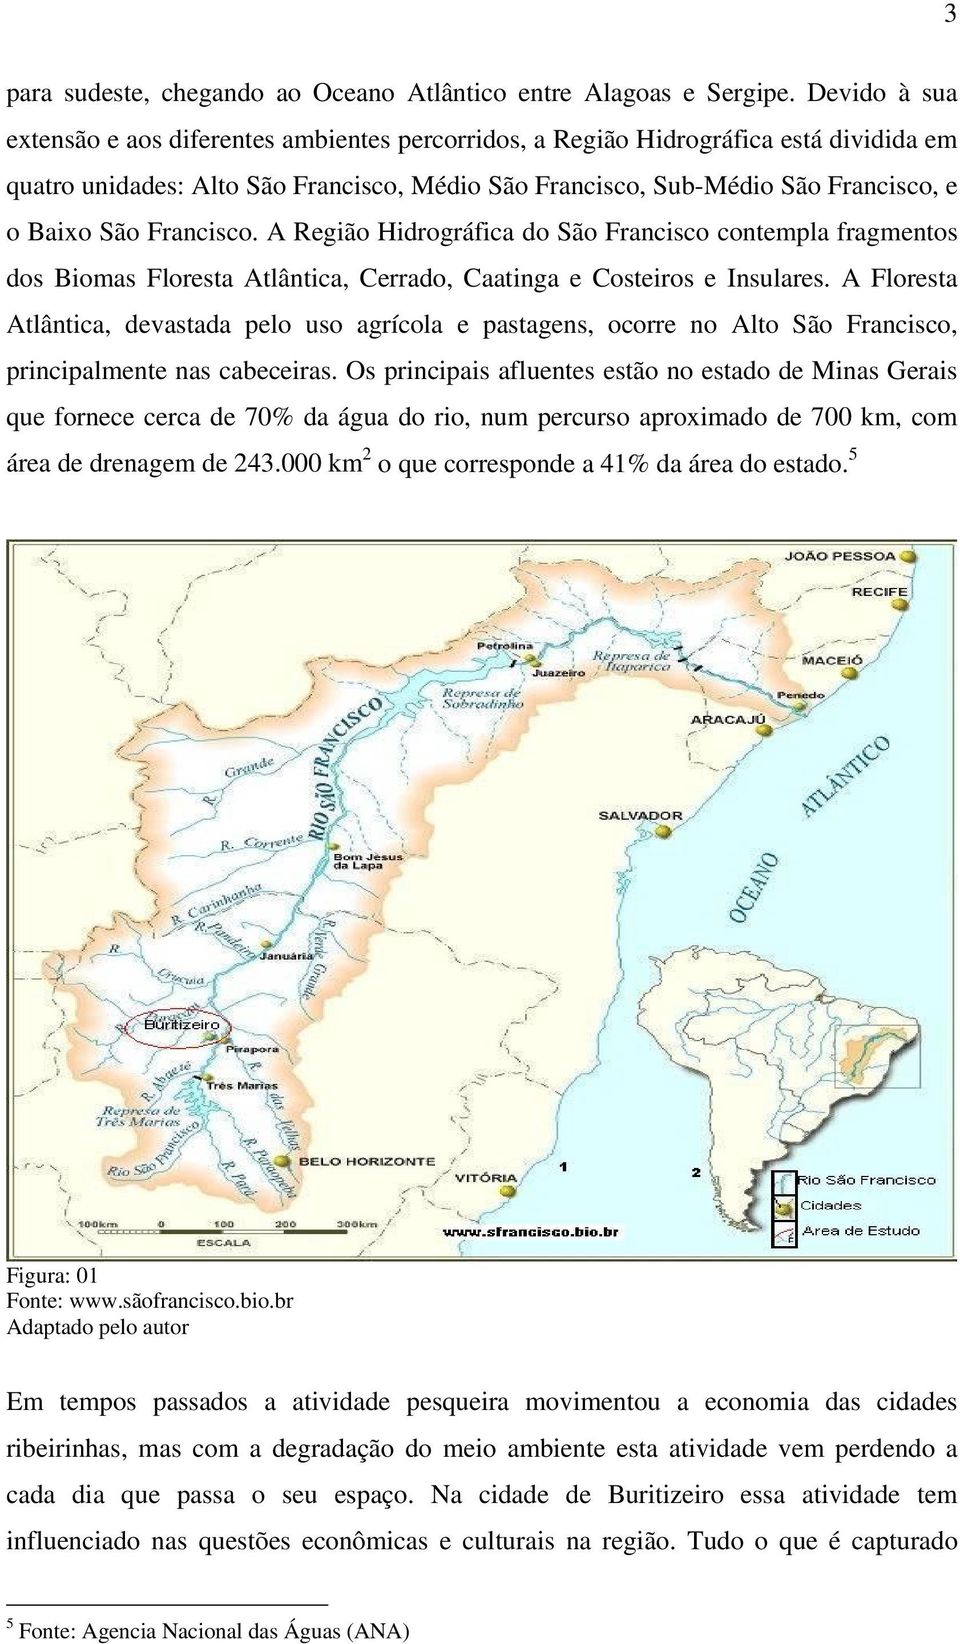 Francisco. A Região Hidrográfica do São Francisco contempla fragmentos dos Biomas Floresta Atlântica, Cerrado, Caatinga e Costeiros e Insulares.